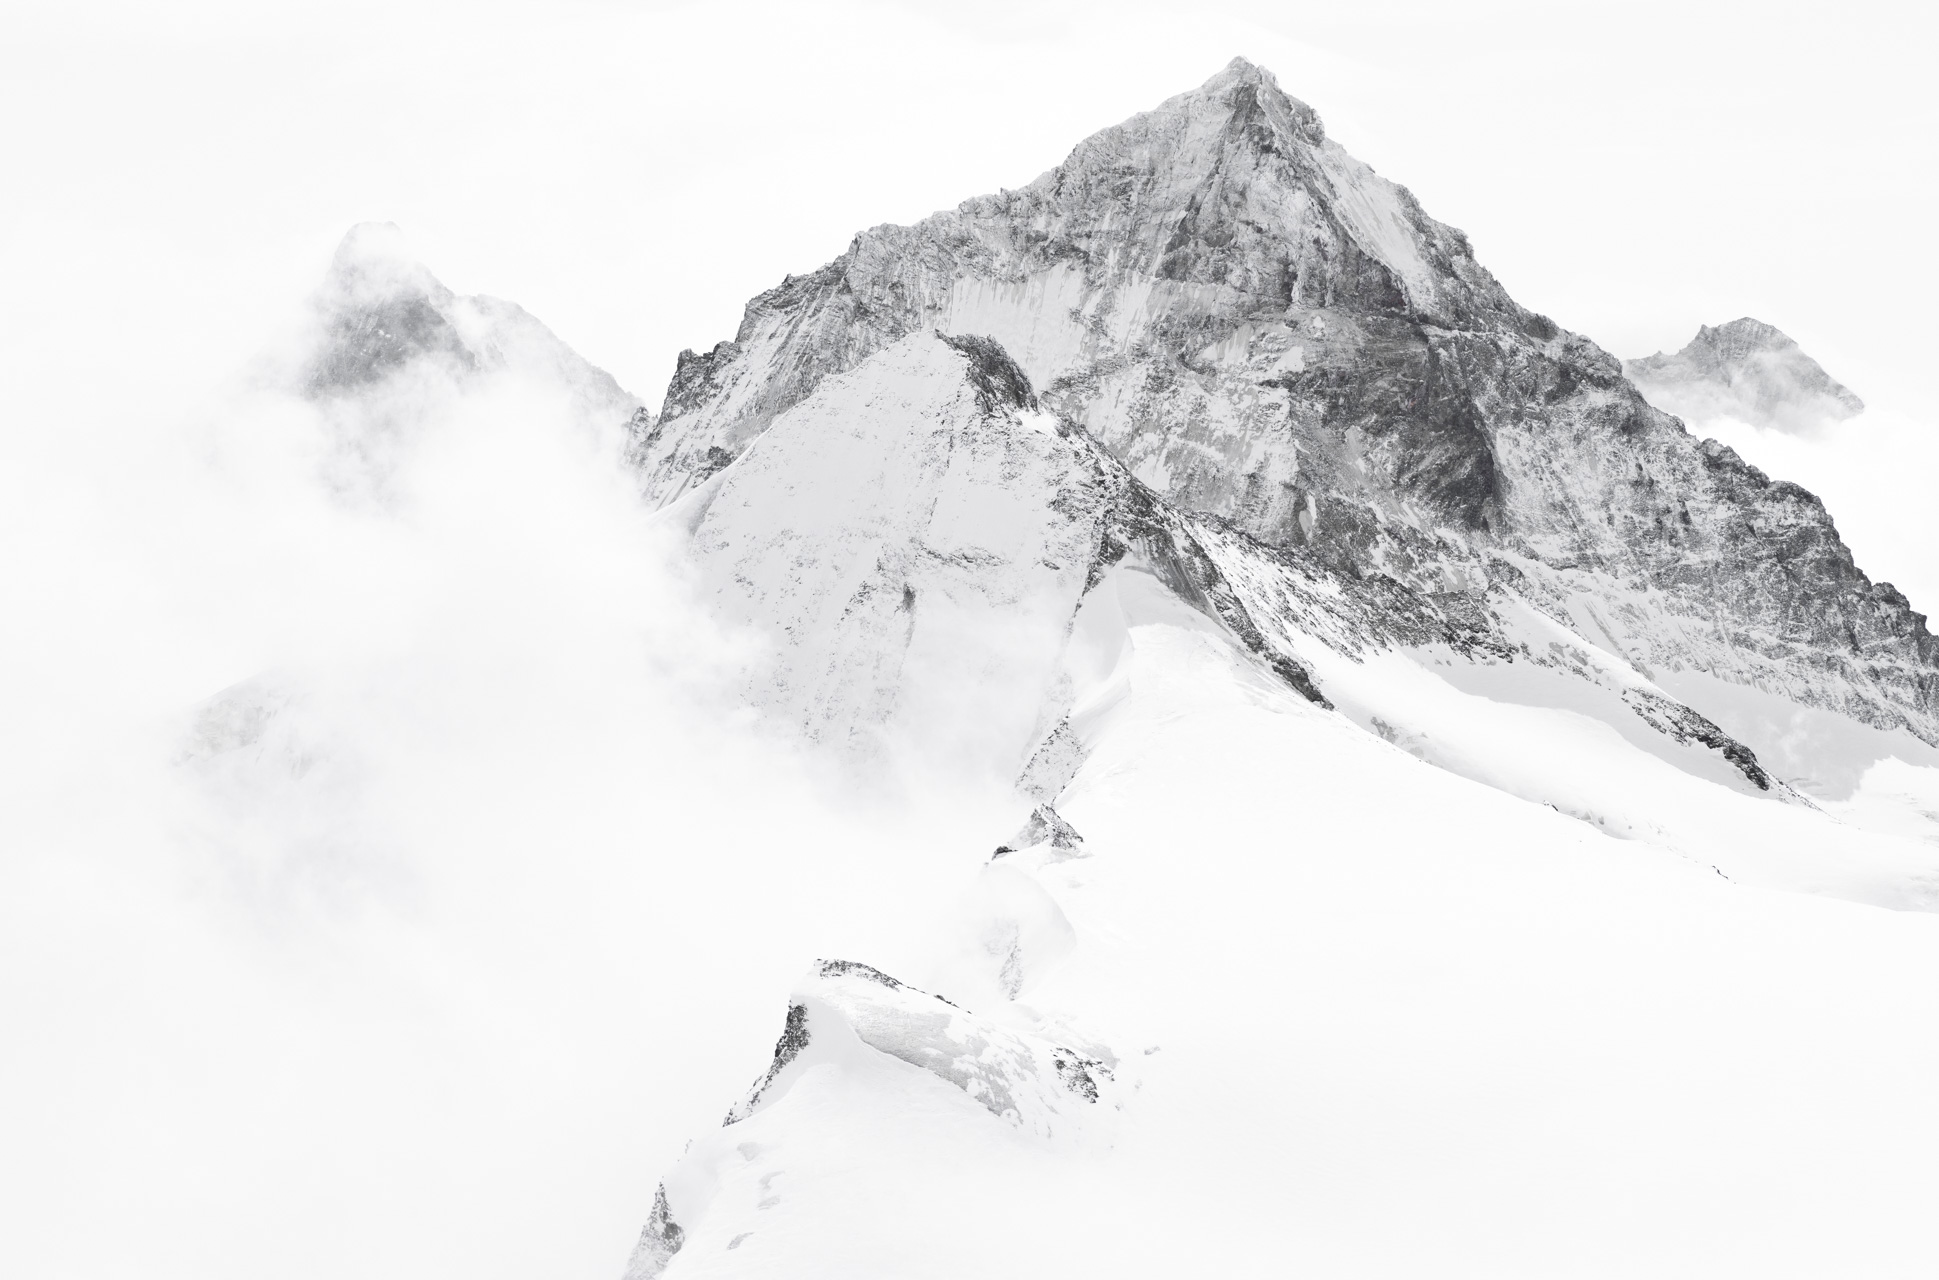 Poster montagne panoramique en noir et blanc - Matterhorn - Dent Blanche - Grand Cornier - Dent d'Hérens